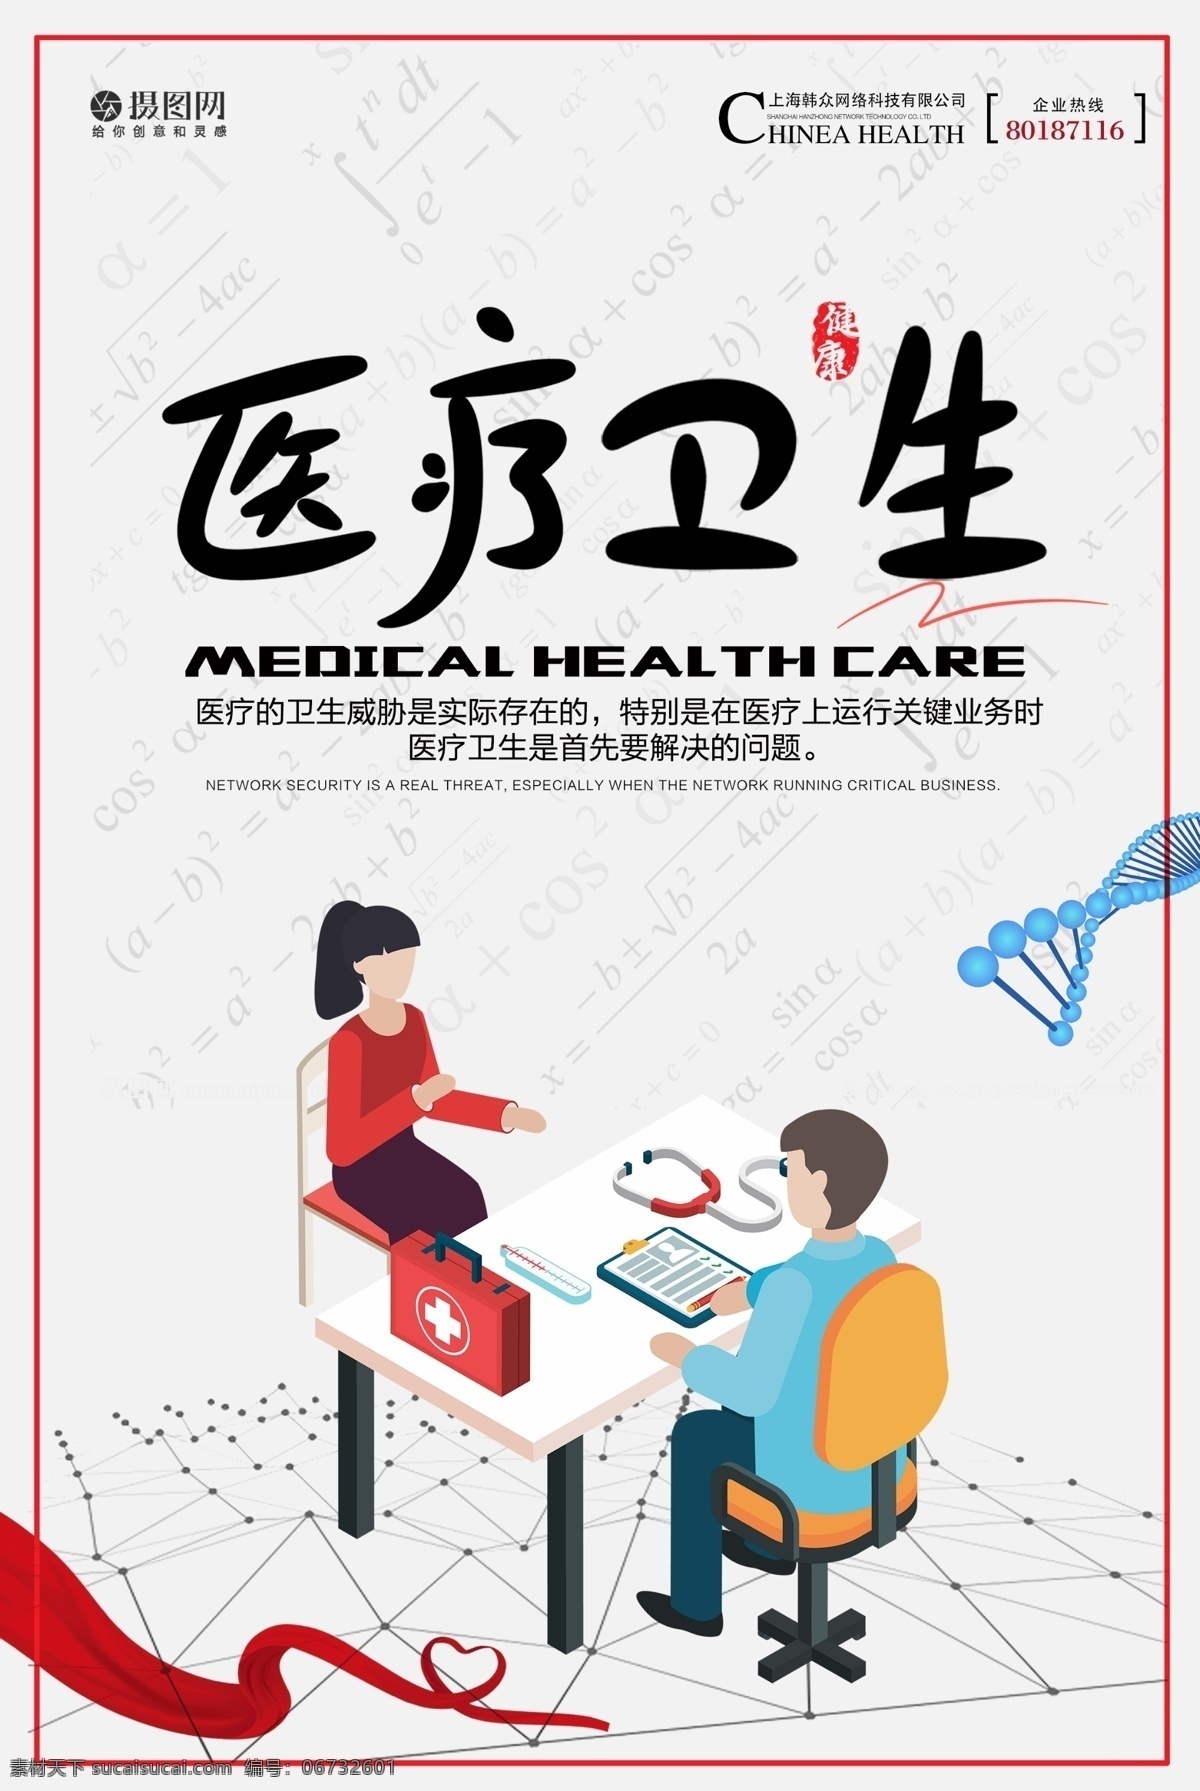 医疗卫生 公益 宣传海报 医疗 卫生 宣传 公益宣传 简约 简约海报 公共 社会 健康